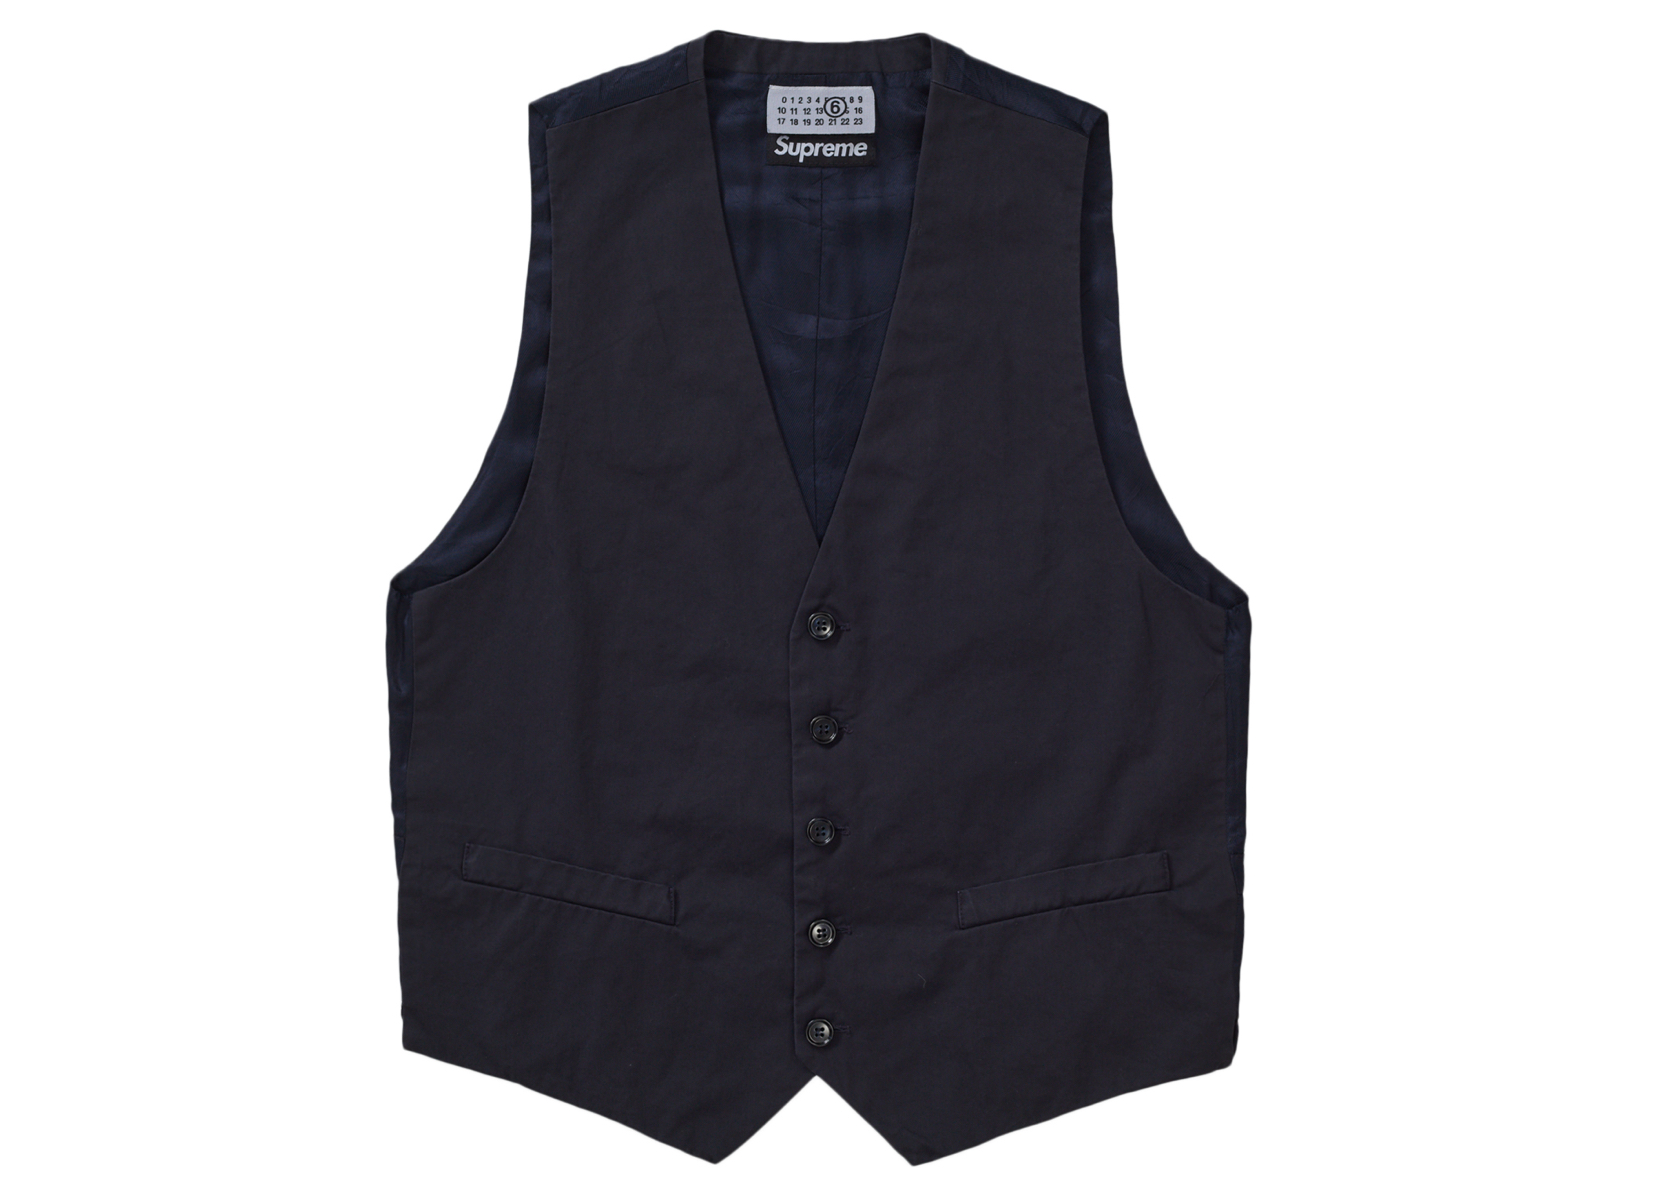 17,999円Supreme x MM6 Maison Margiela Suit Vest